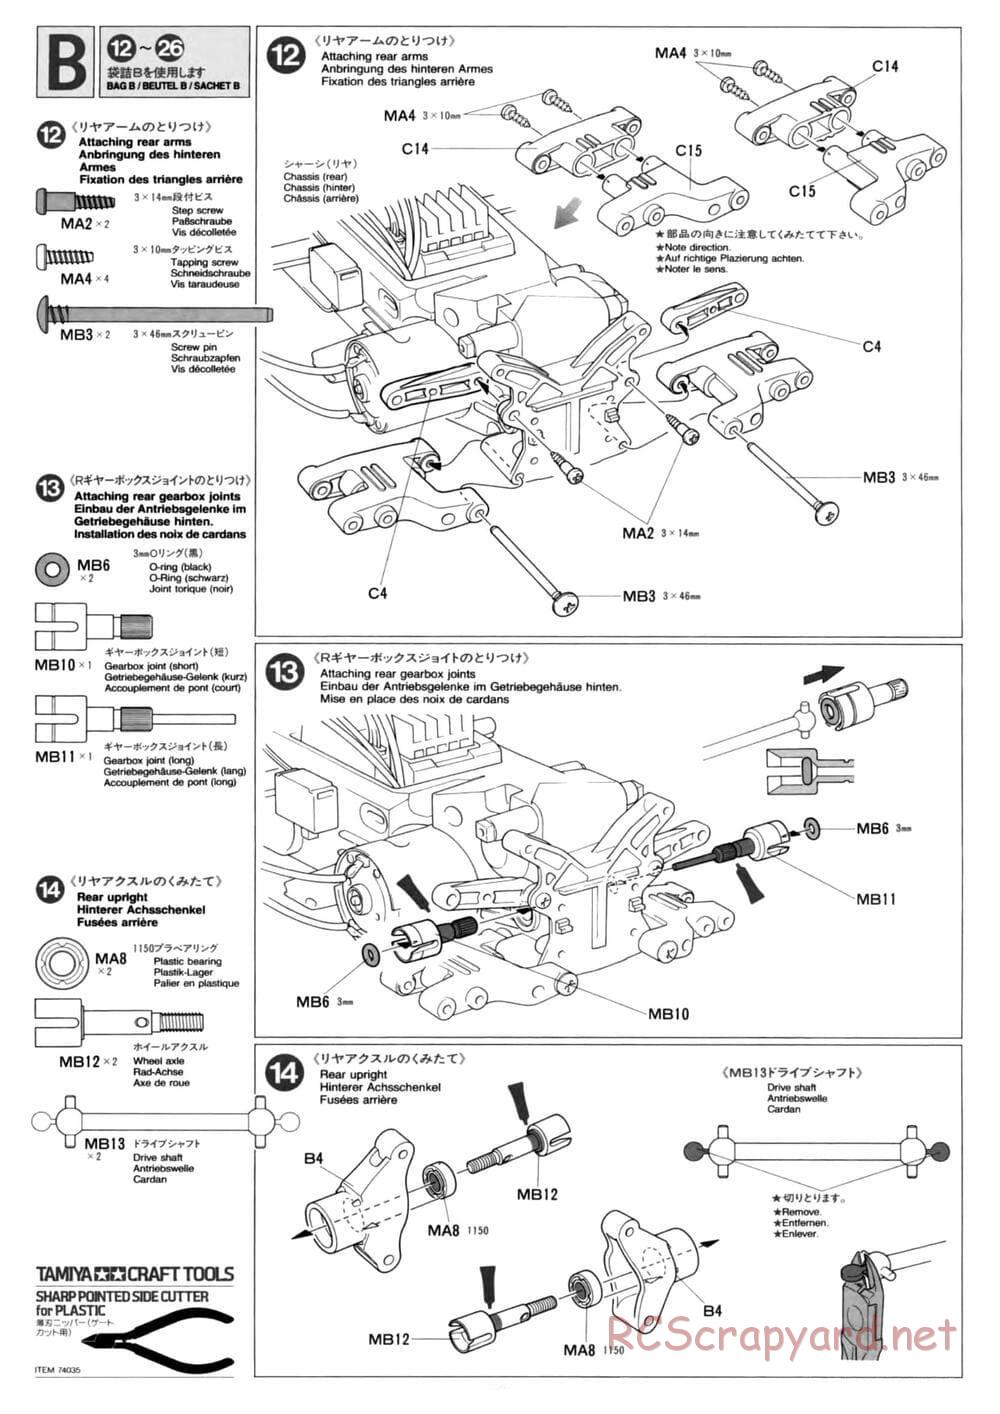 Tamiya - TL-01 Chassis - Manual - Page 10